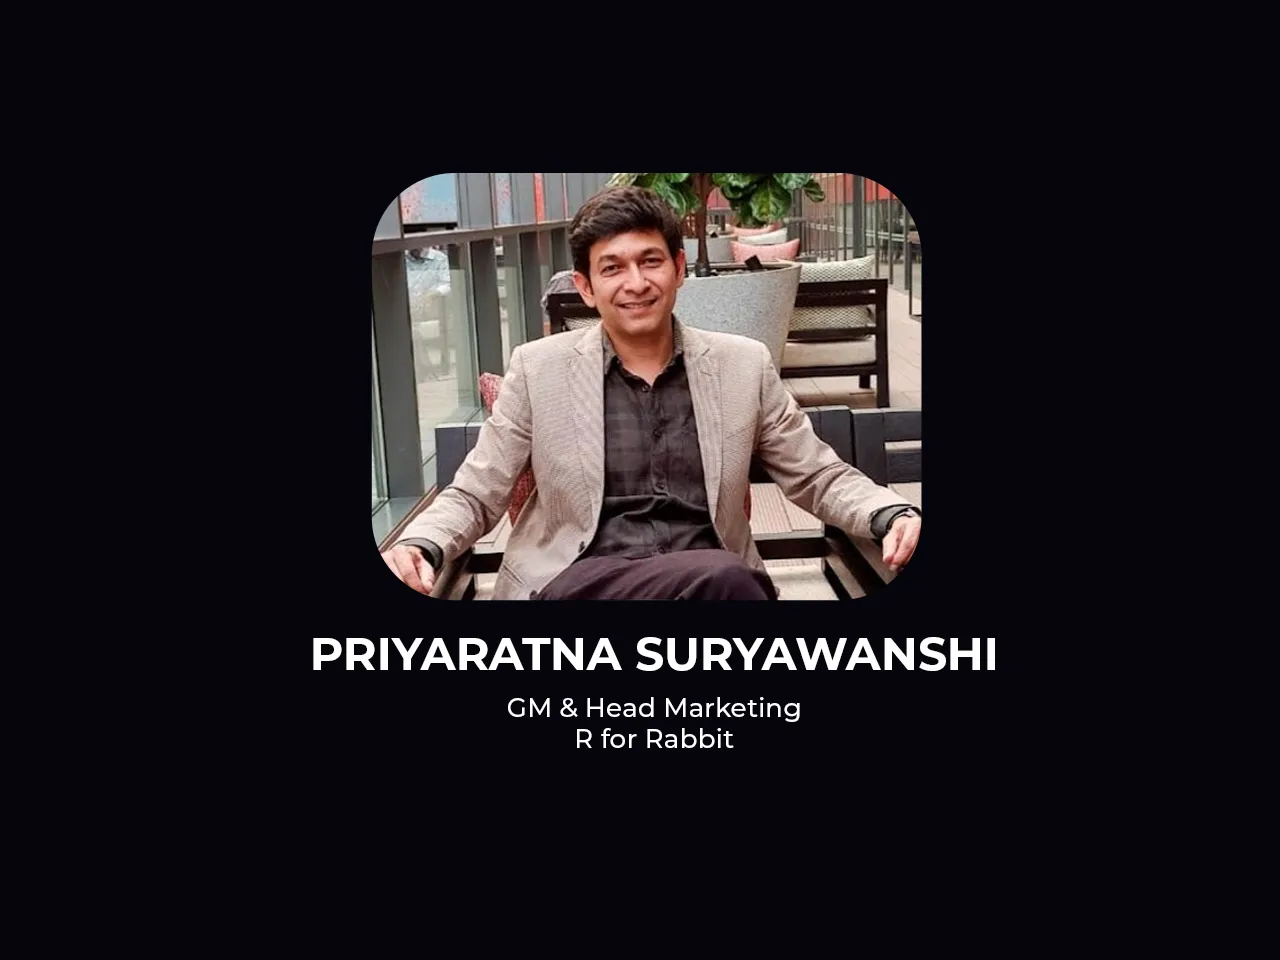 Priyaratna Suryawanshi